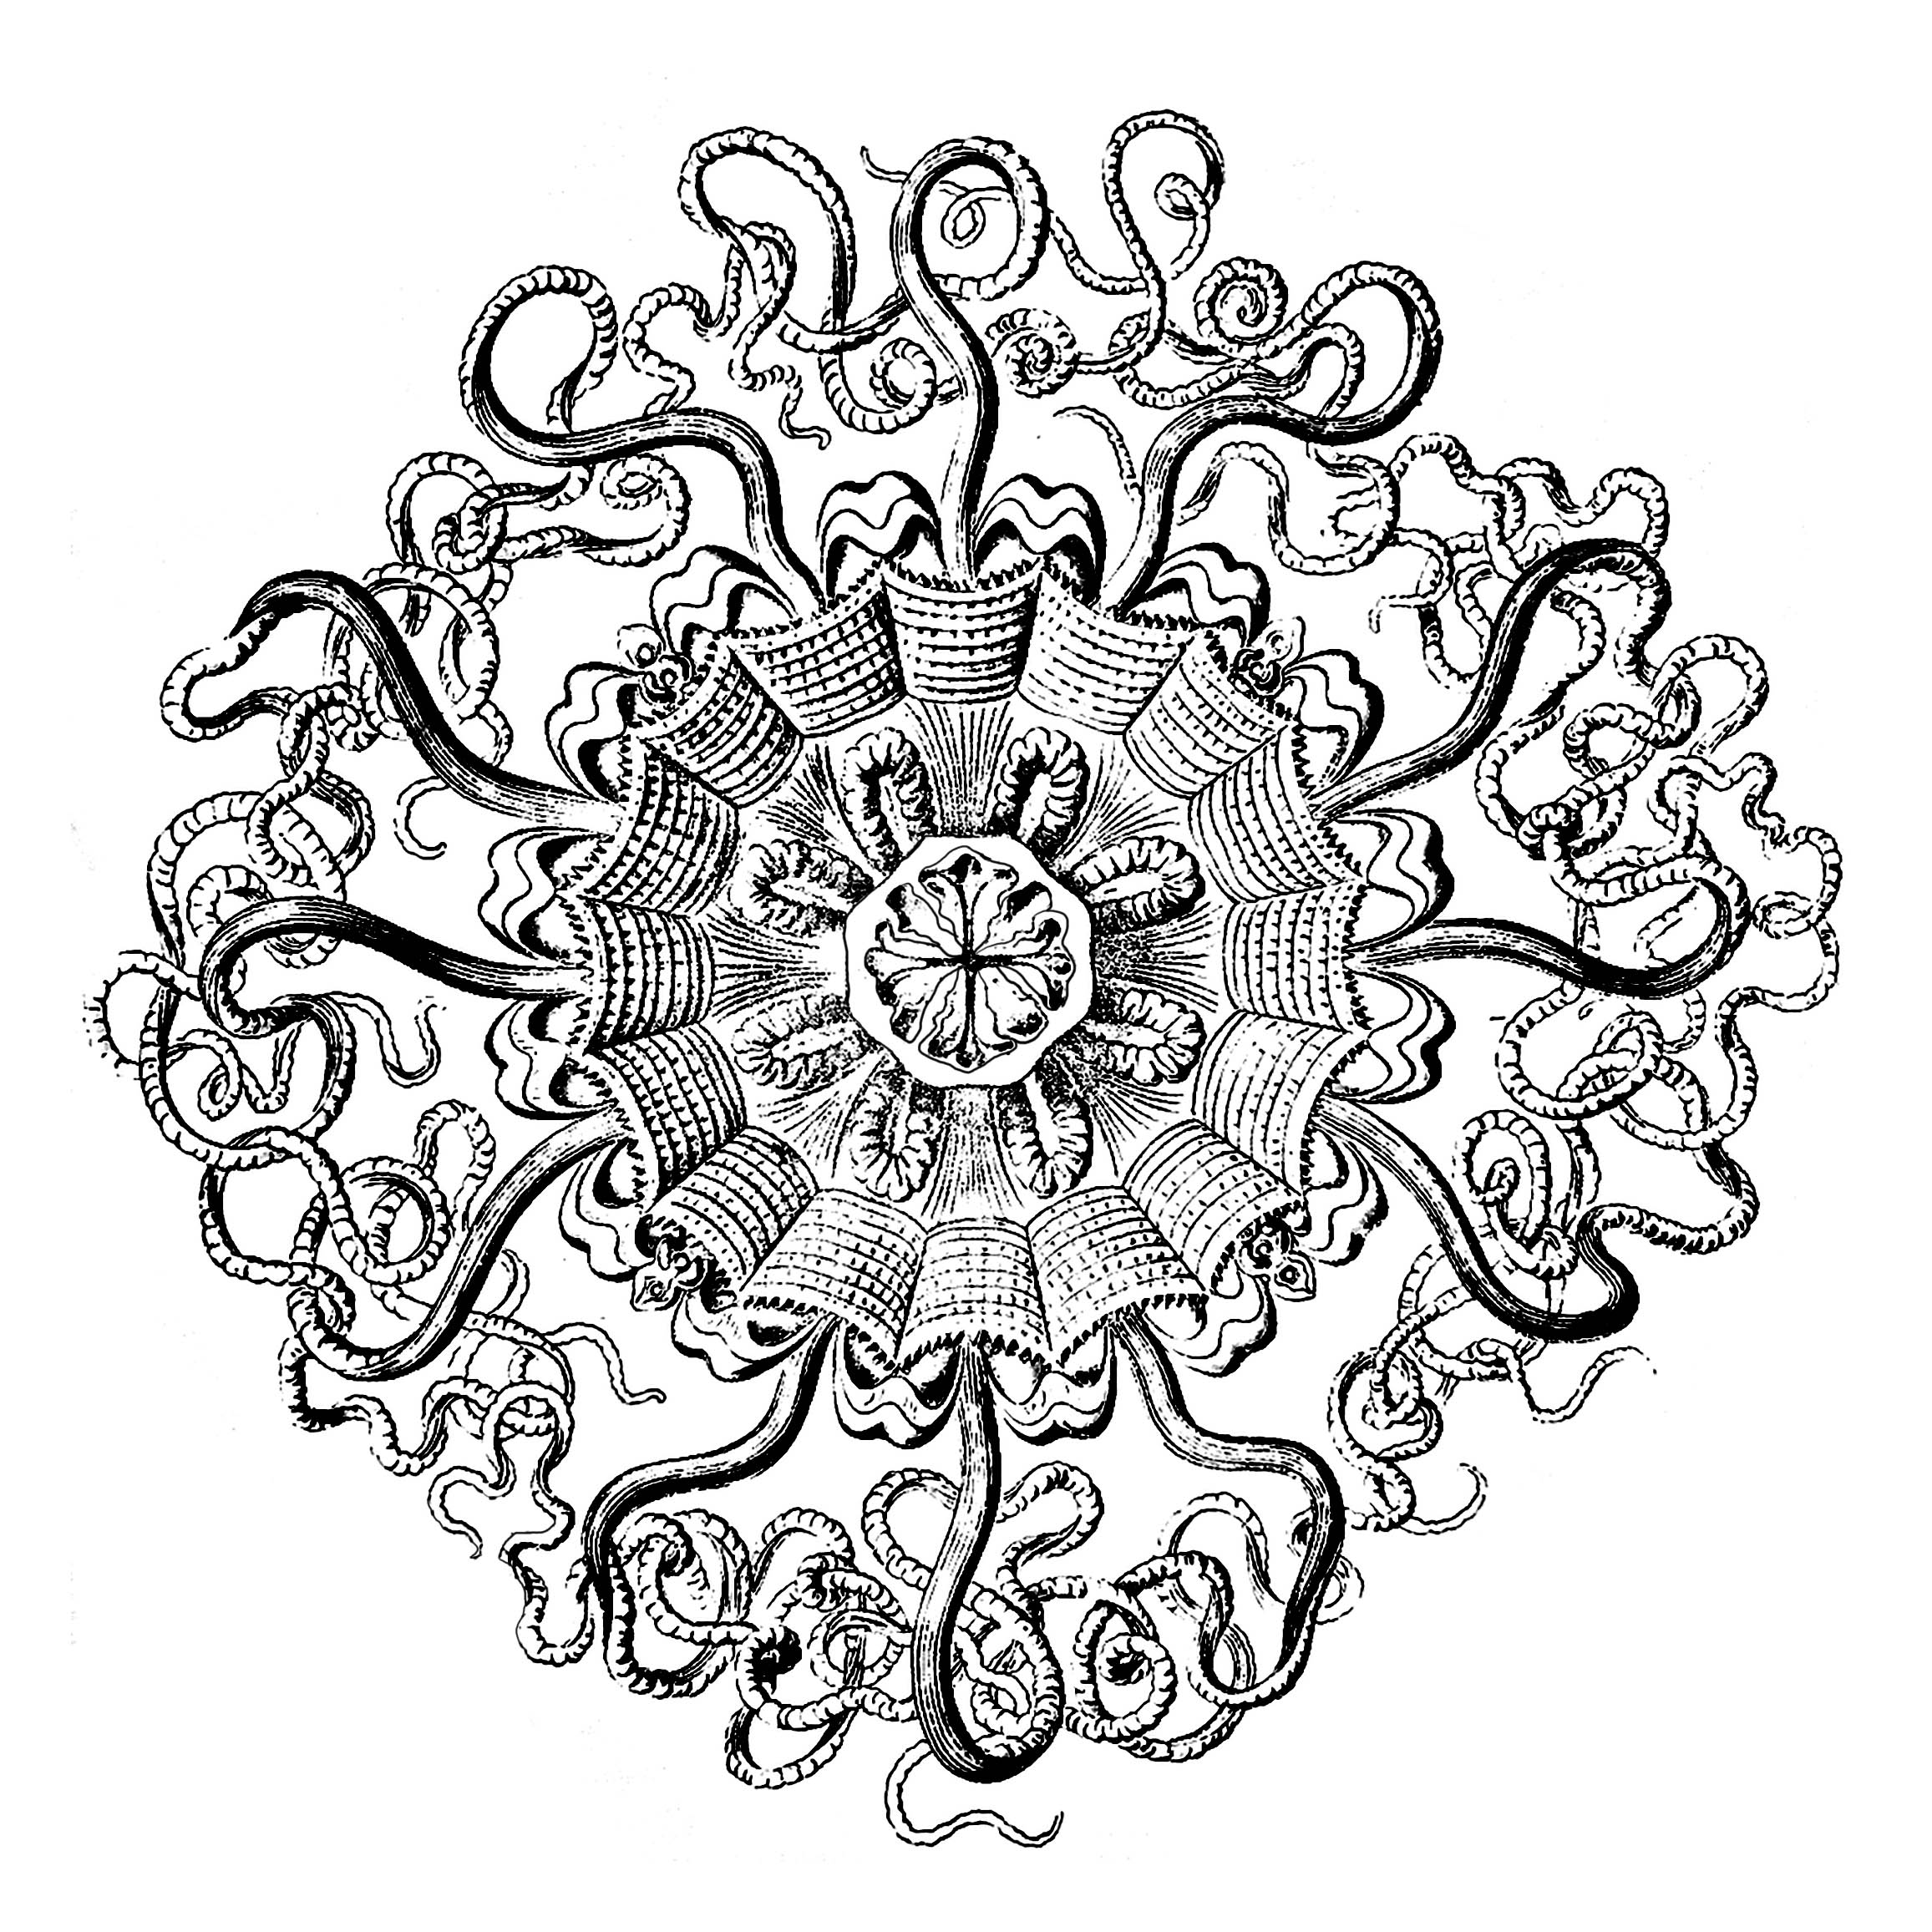 Création originale à partir d'une planche anatomique de méduse (peromedusae) du 18e siècle